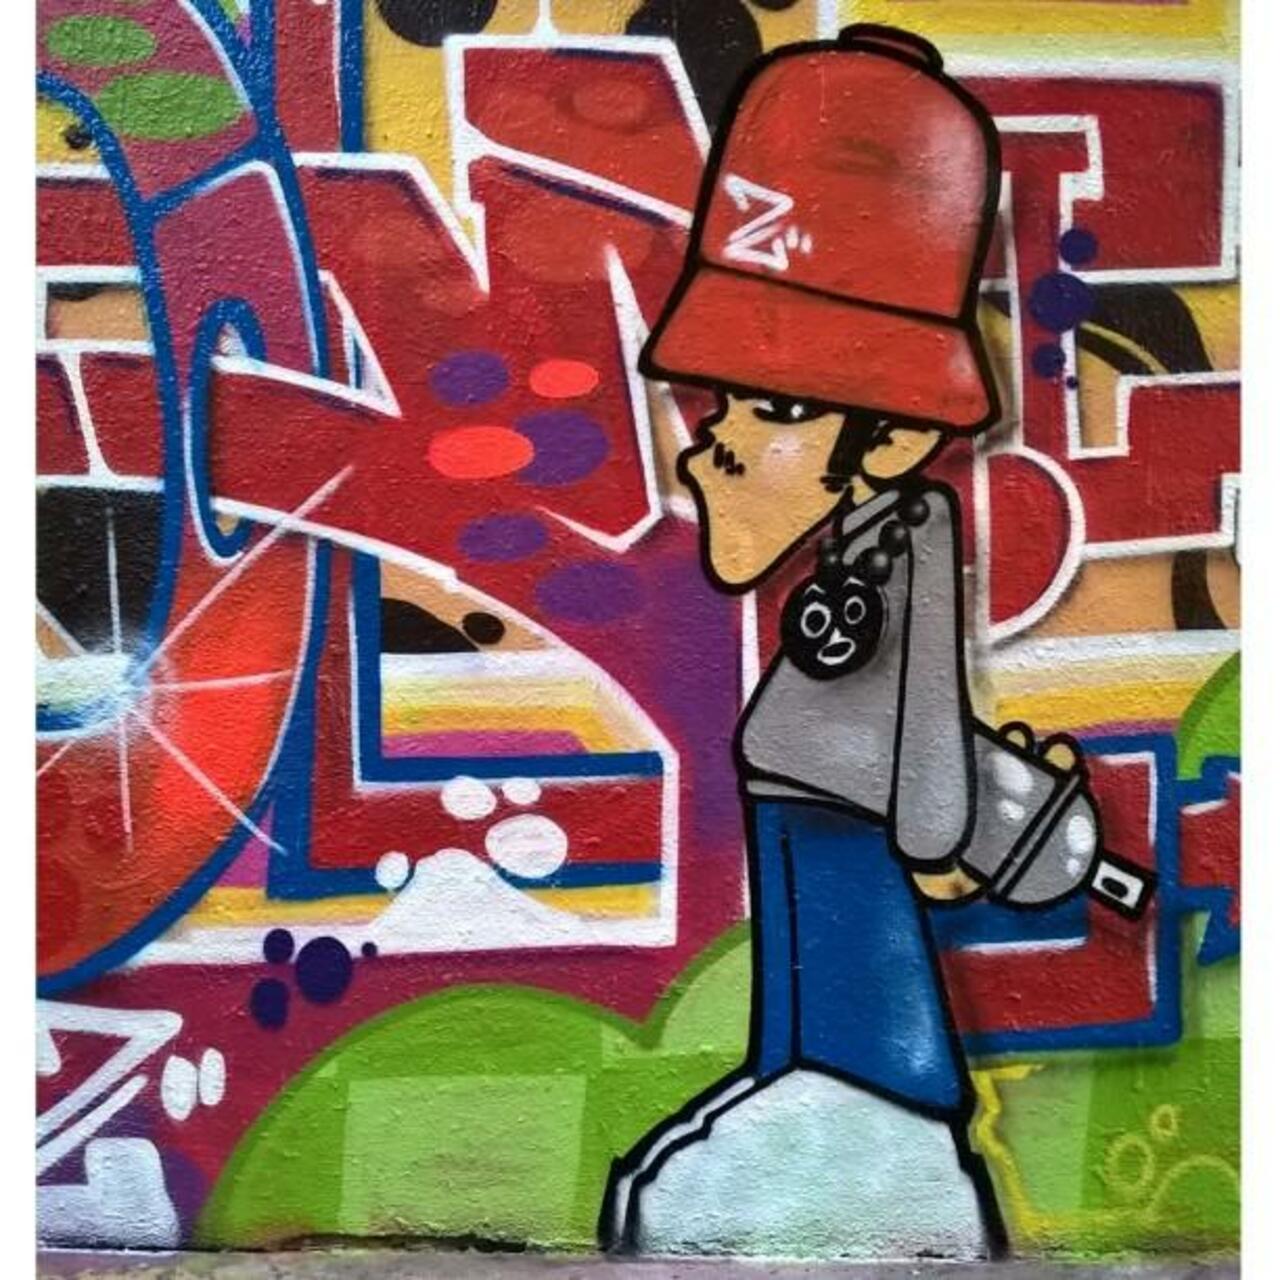 Bboy by YELLOW
#hiphop #zulu #zulunation #streetart #graffiti #graff #art #fatcap #bombing #sprayart #spraycanart #… http://t.co/0vjsTWrxxt